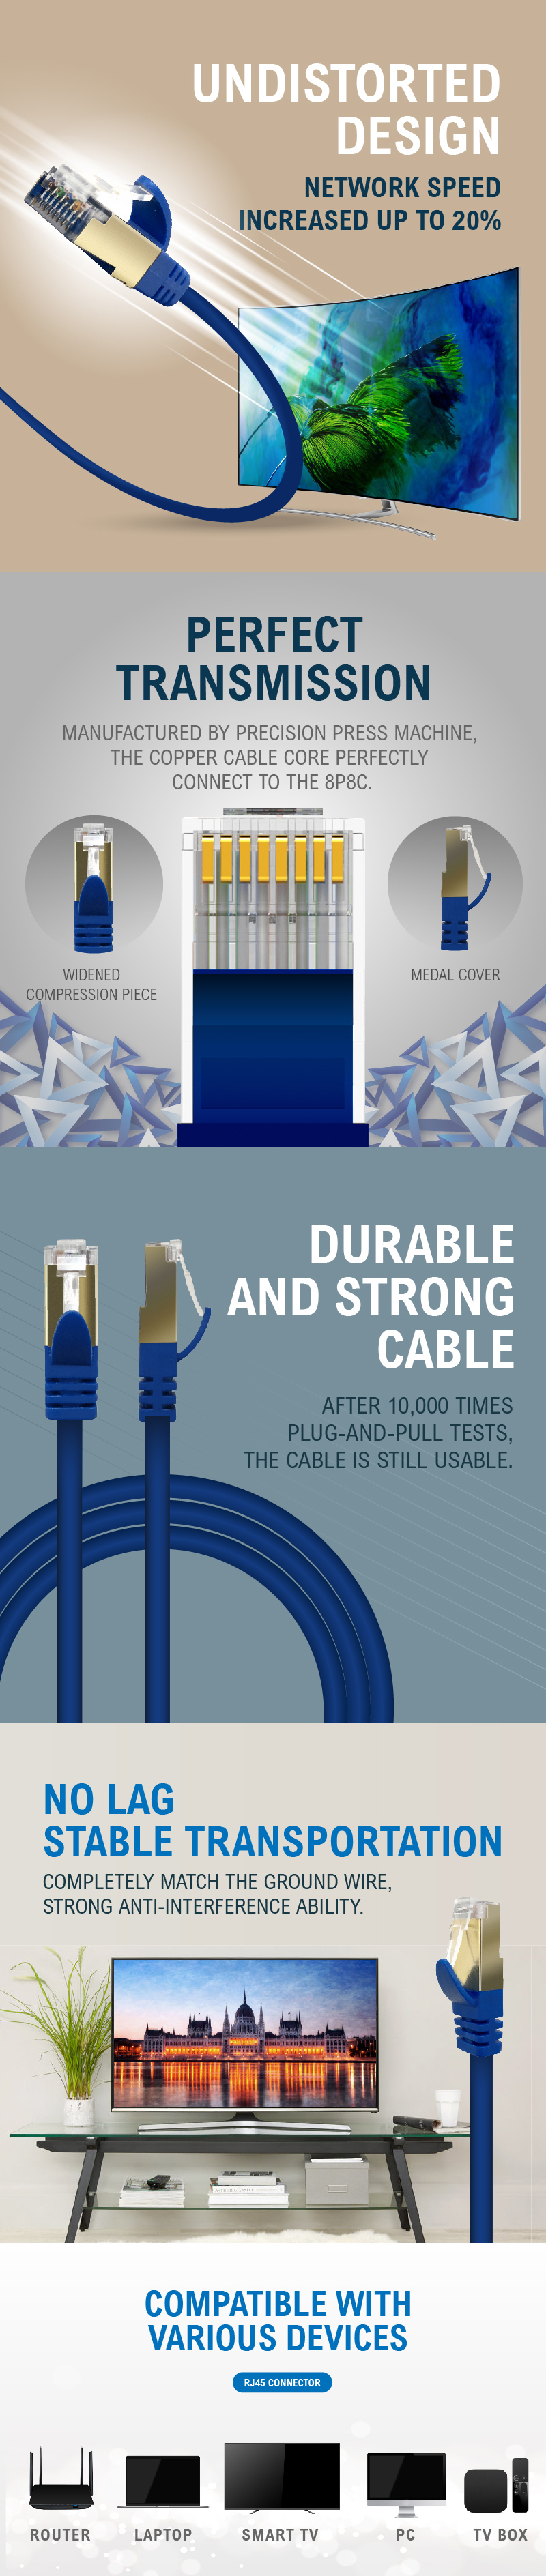 Network-Cables-Cablelist-Cat6-UTP-Ethernet-Cable-5m-Black-2